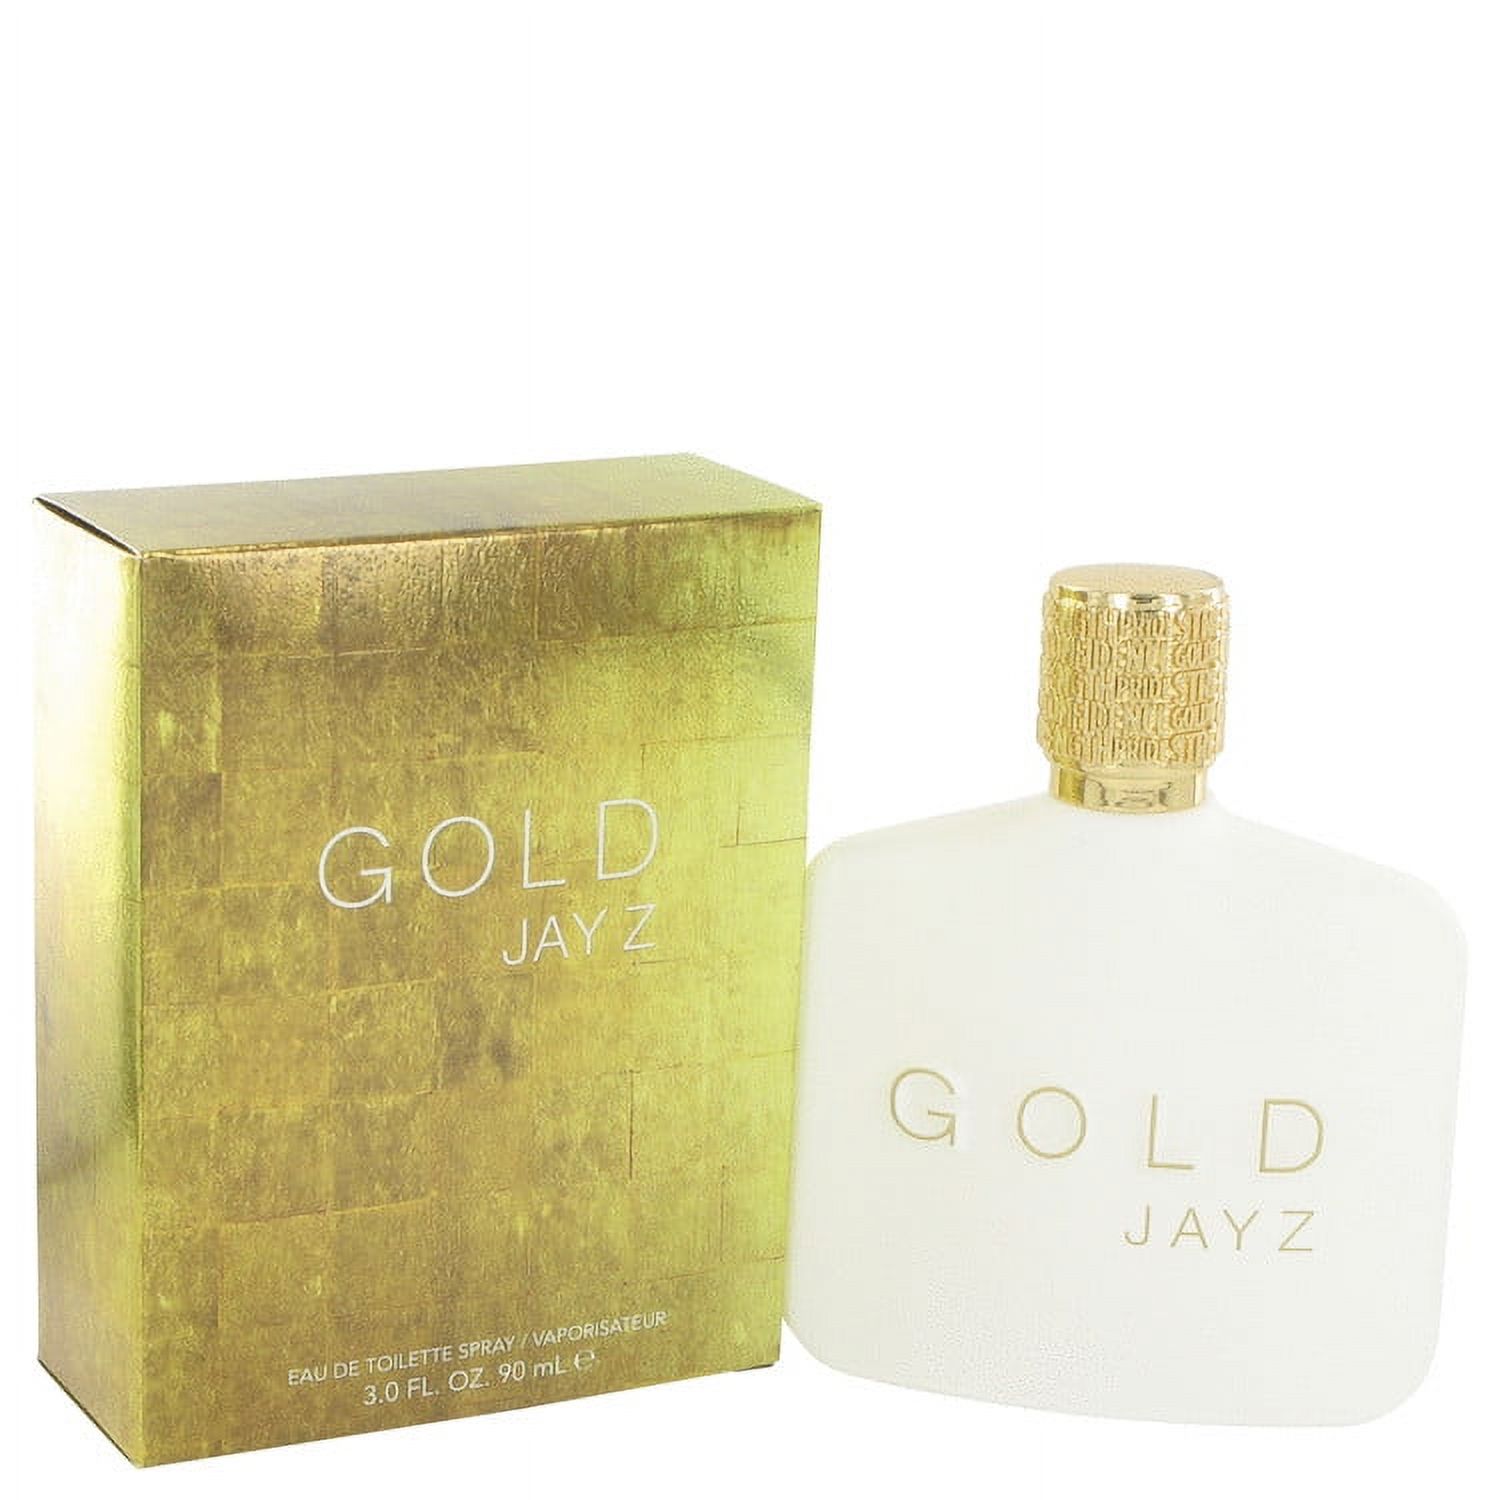 Jay-Z Gold Eau de Toilette Spray, Cologne for Men, 3 oz - image 1 of 3